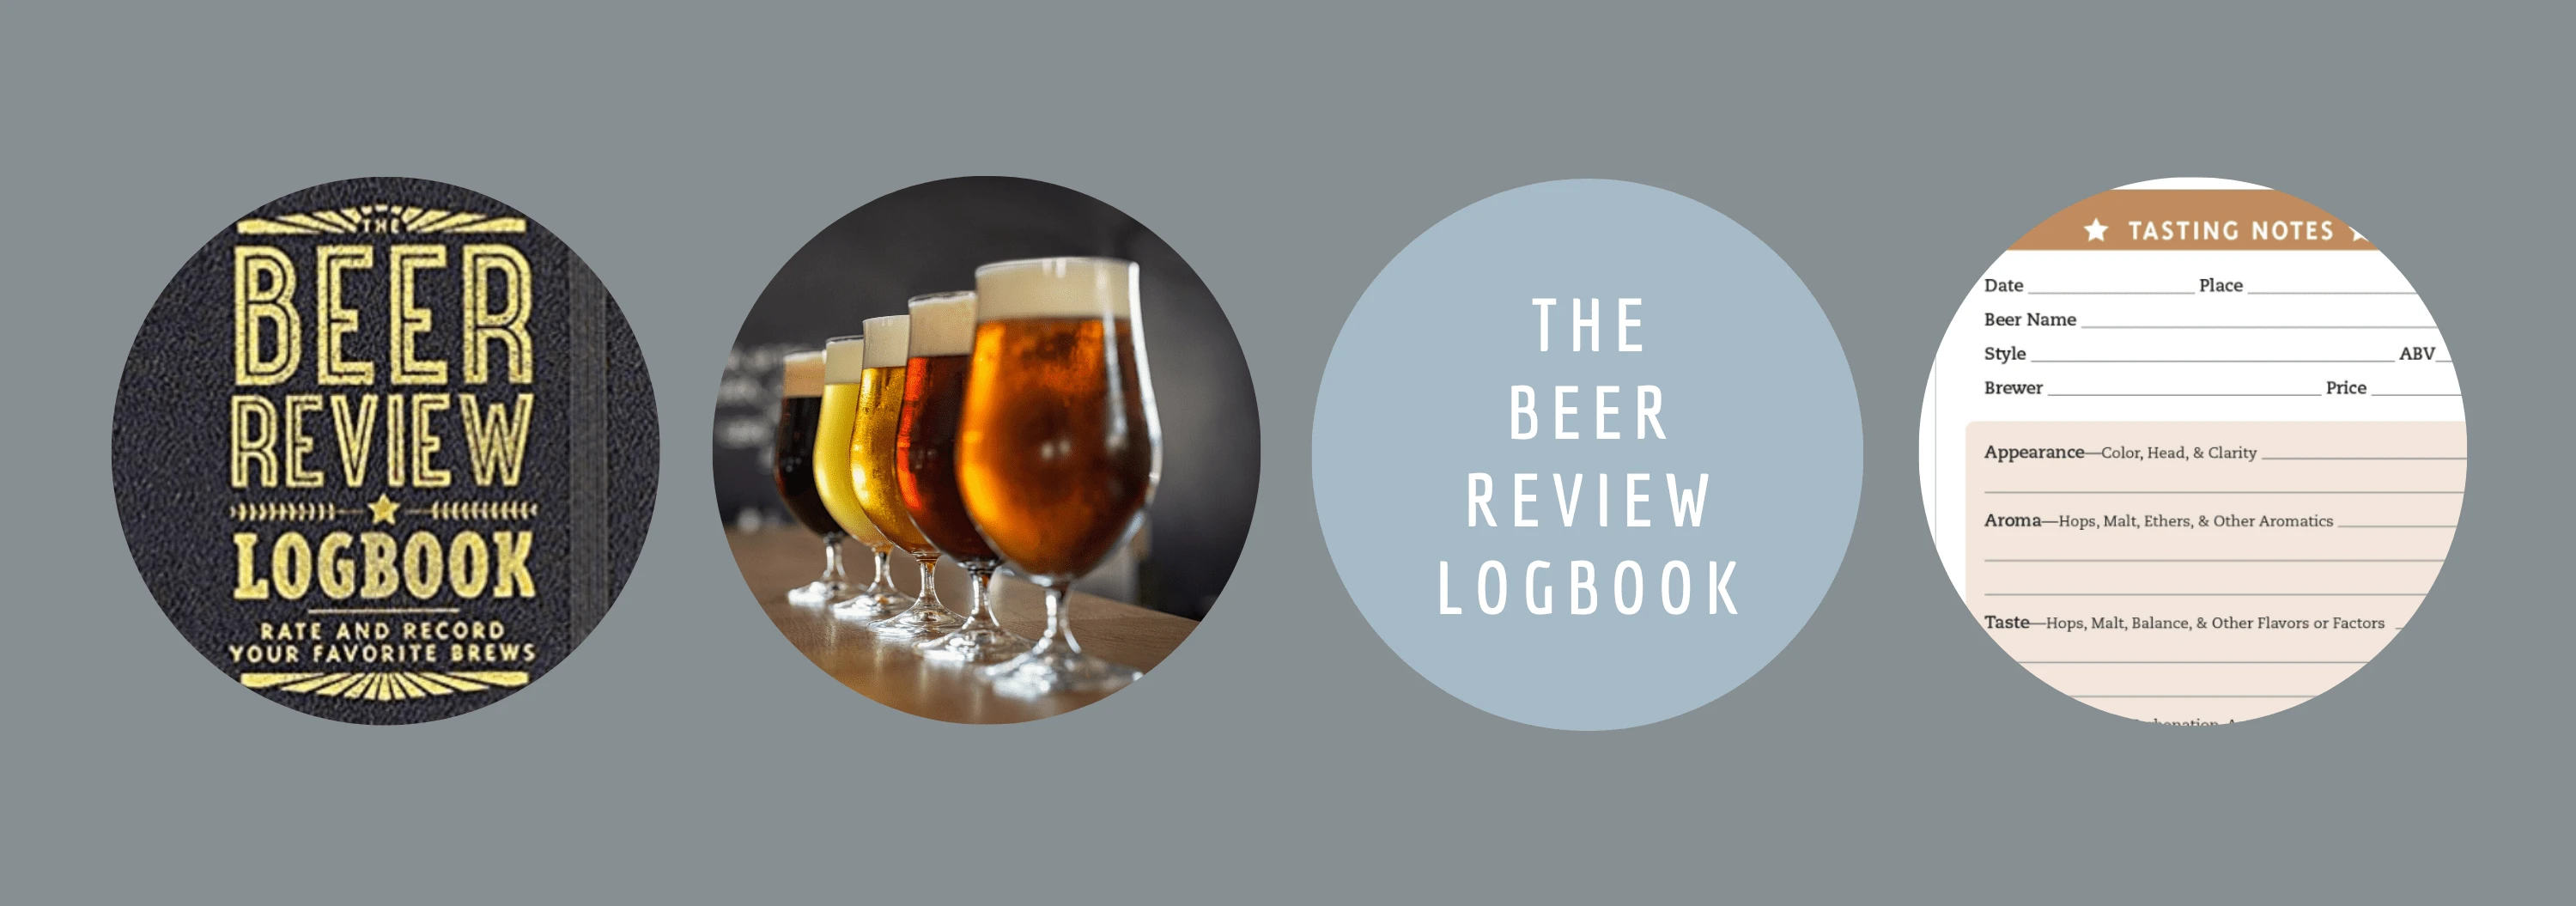 beer review logbook